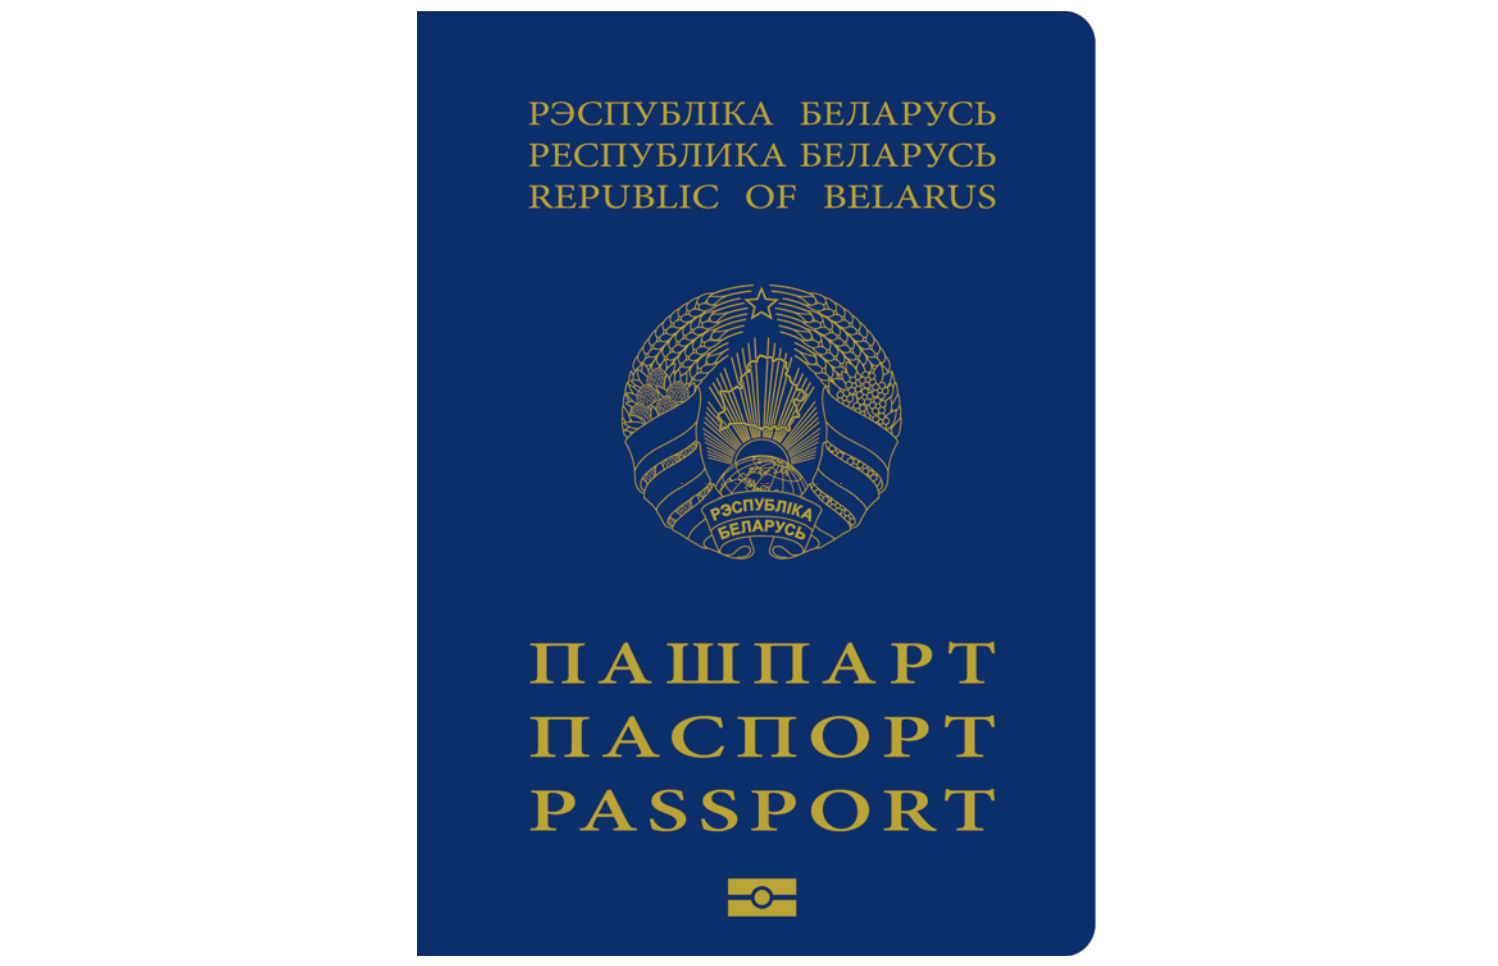 Как поменять паспорт в году в Беларуси: документы, сроки, цены | Новости Беларуси|БелТА